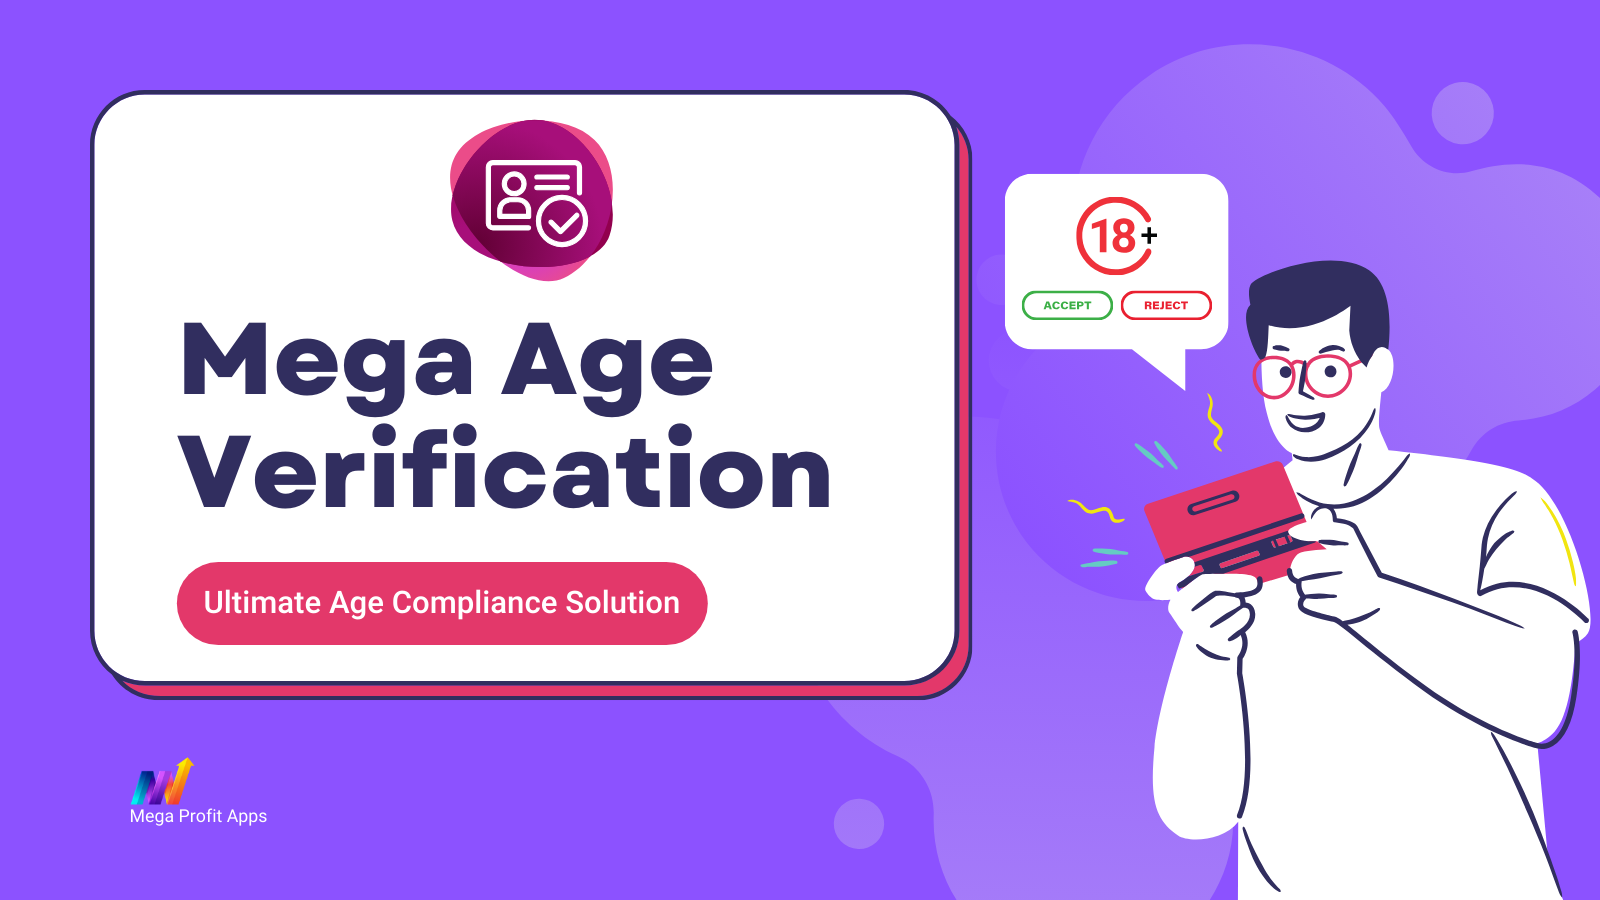 Mega Age Verification - Säkerställ laglig efterlevnad utan ansträngning